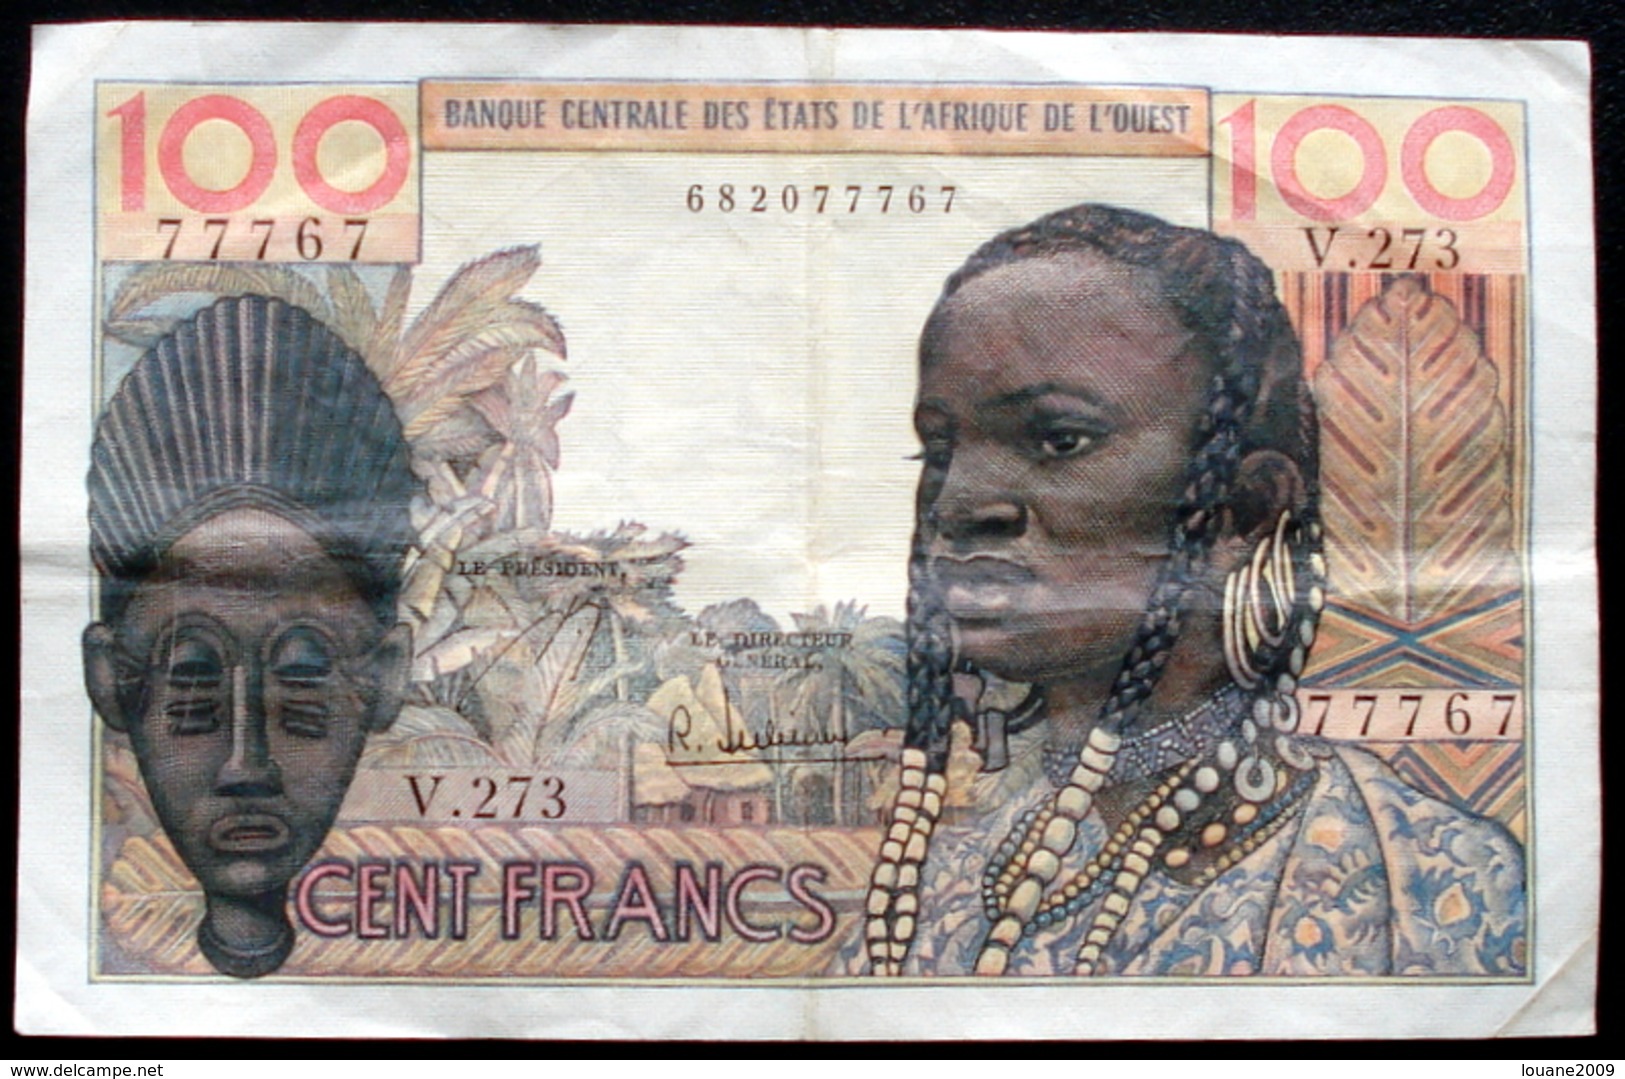 Afrique De L'ouest - 100 Francs Type 1959 - 1965 Non Daté Alphabet V 273  1 Billet - Autres - Afrique